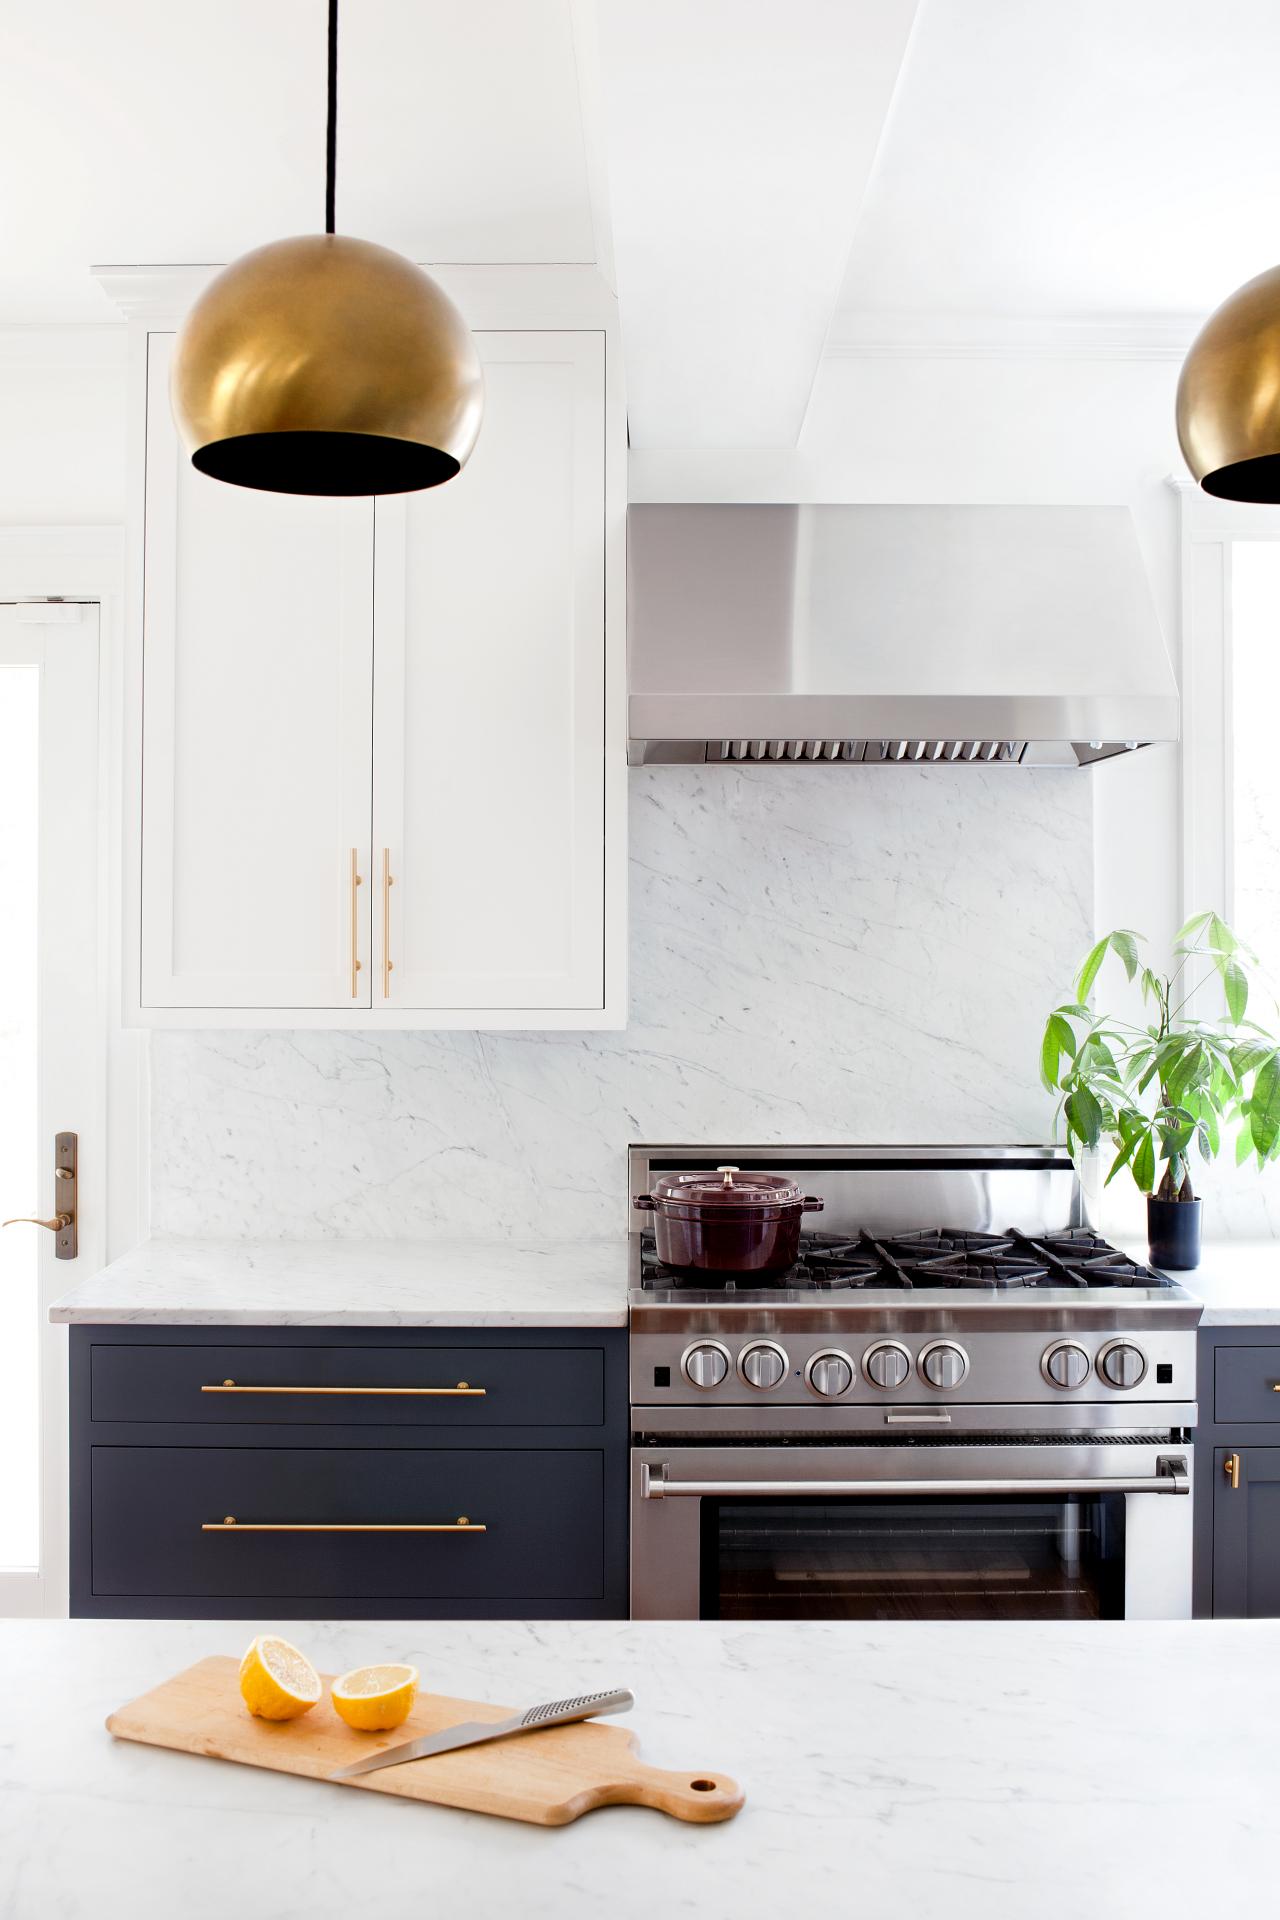 Kitchen Cabinet Hardware Ideas, Mid Century Modern Black Cabinet Knobs